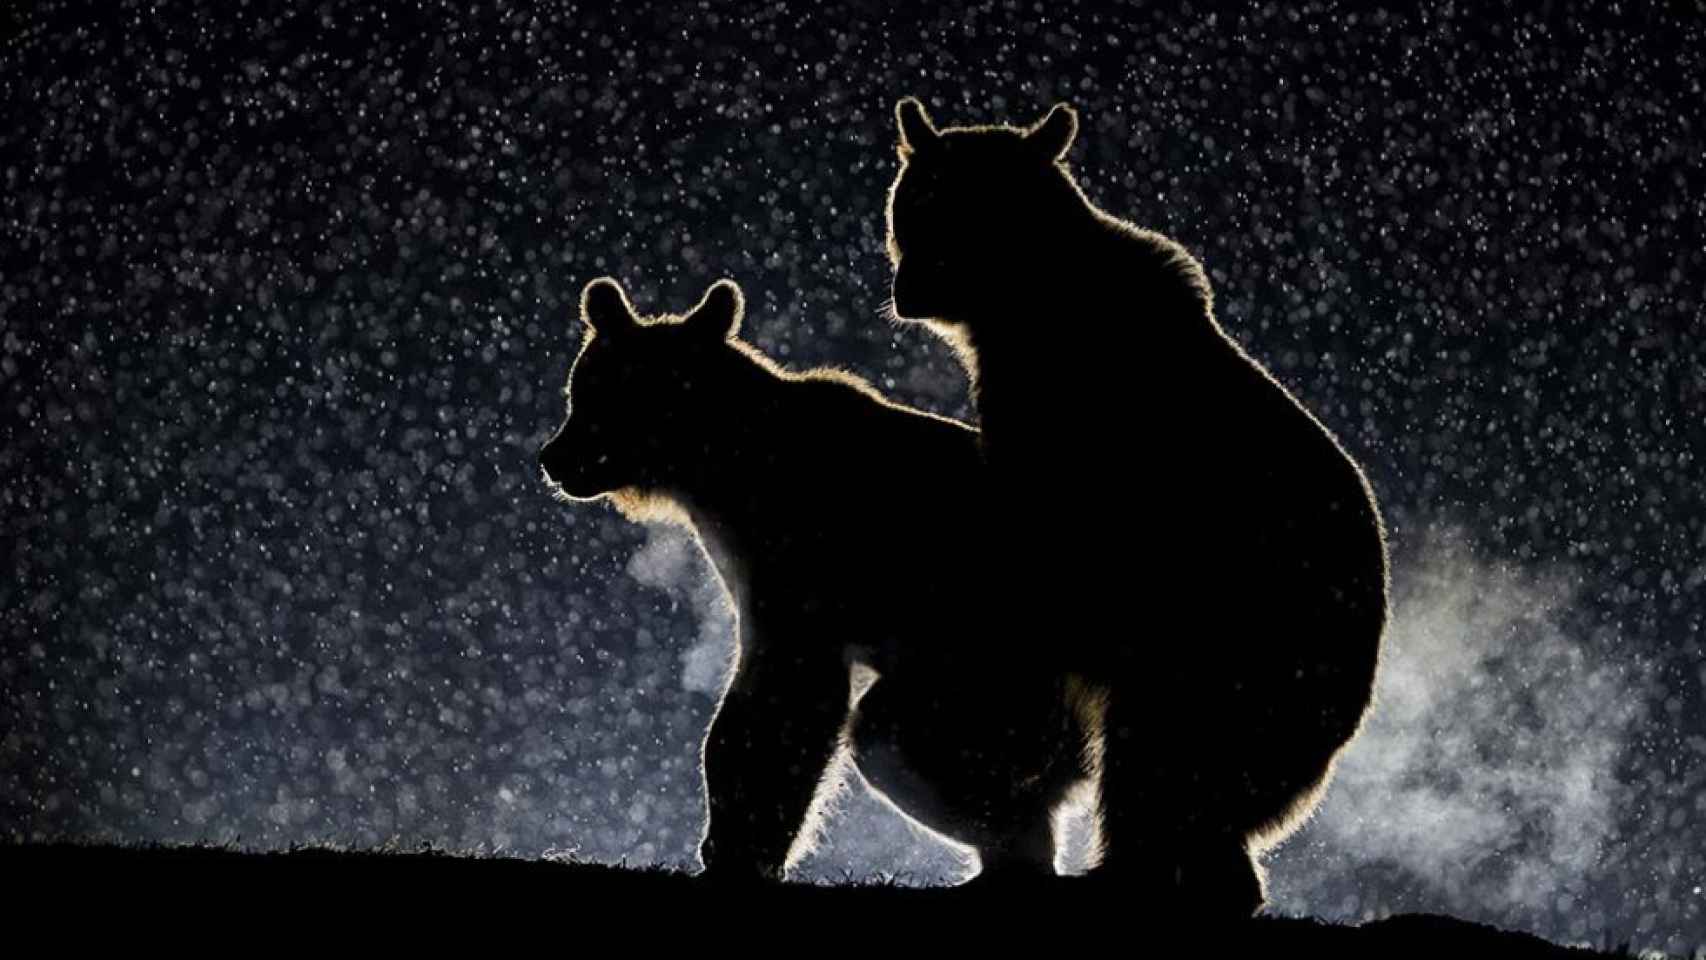 Dos osos manteniendo un encuentro sexual furtivo en plena noche estrellada. Amor del bueno.